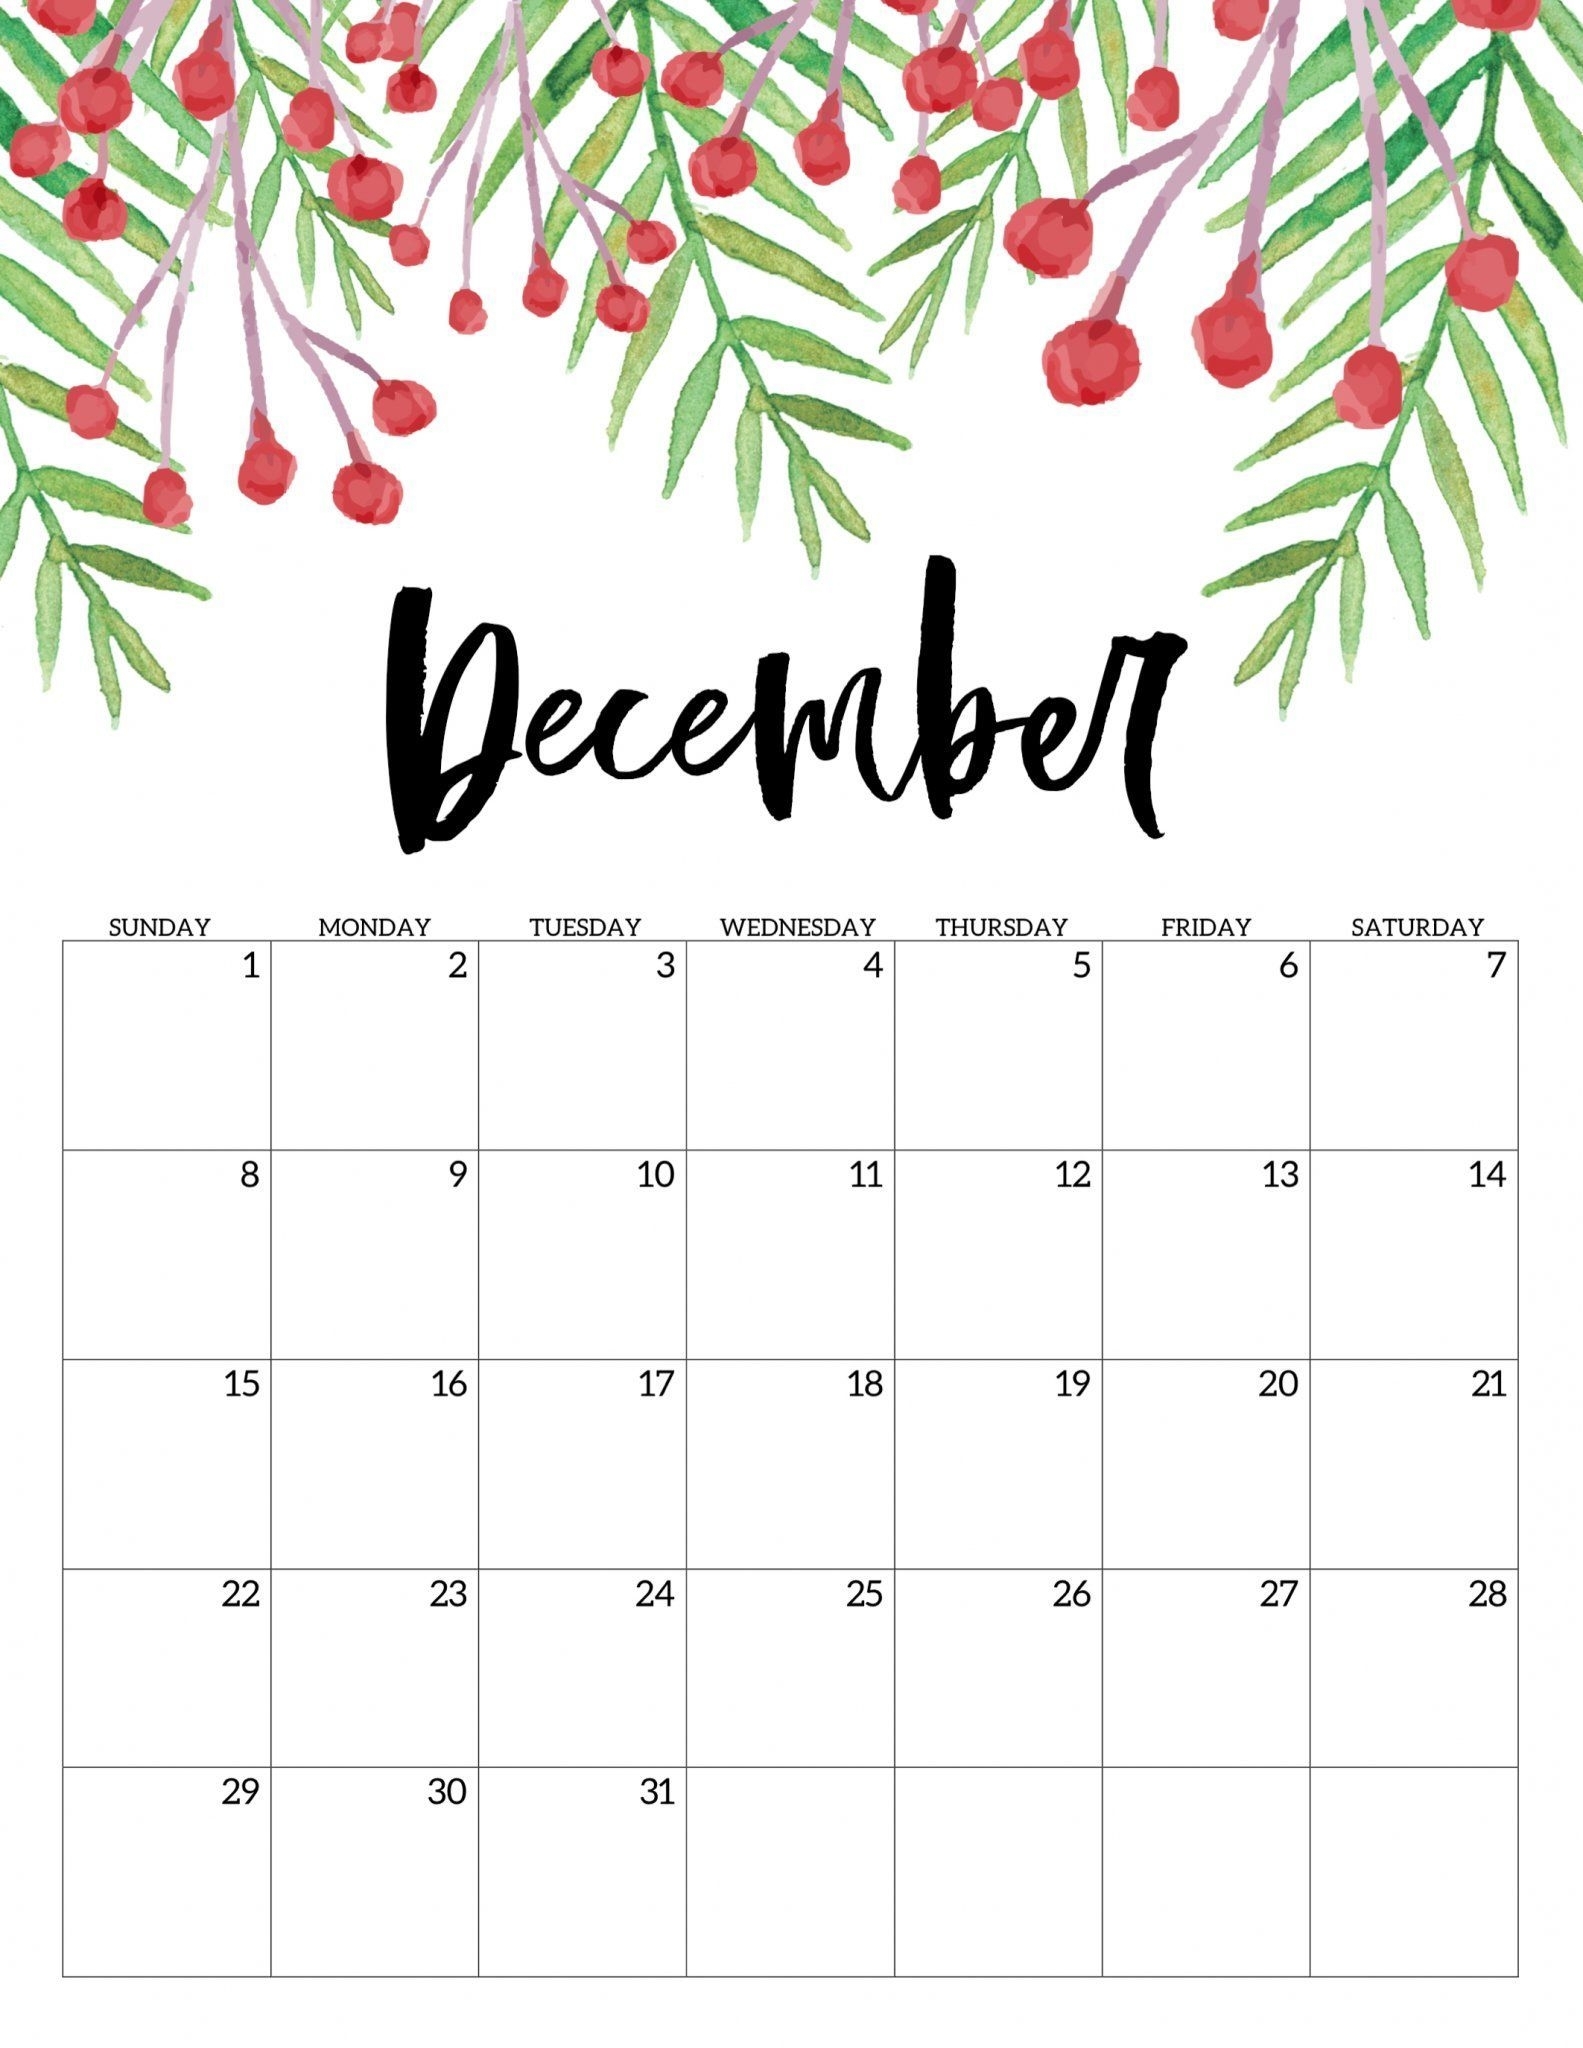 December 2019 Calendar A4 Size Landscape Vertical Portrait